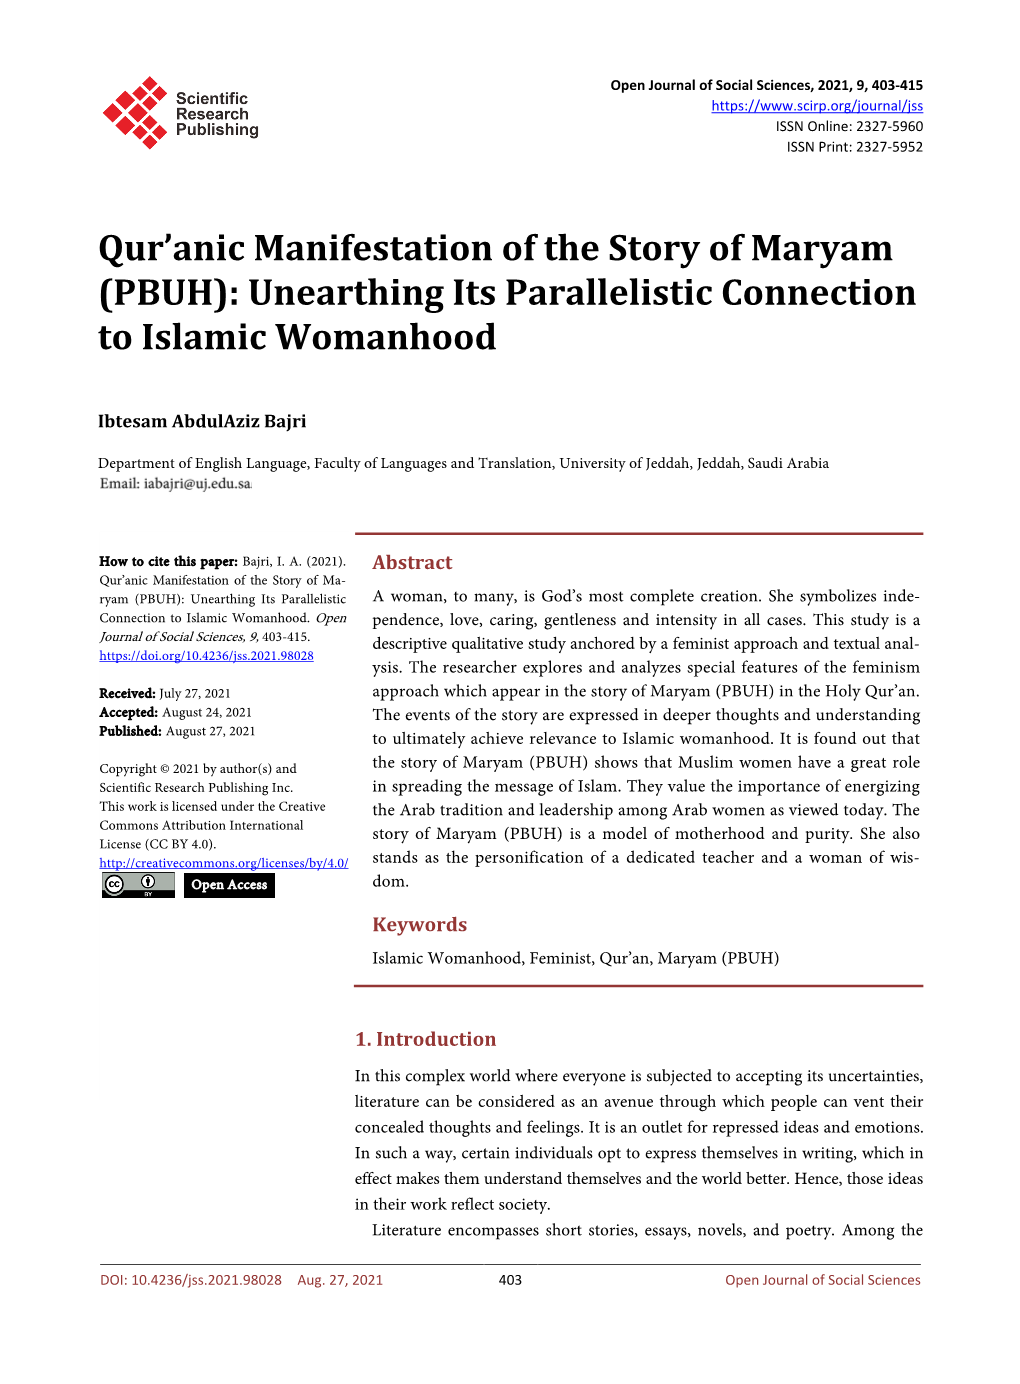 Qur'anic Manifestation of the Story of Maryam (PBUH)